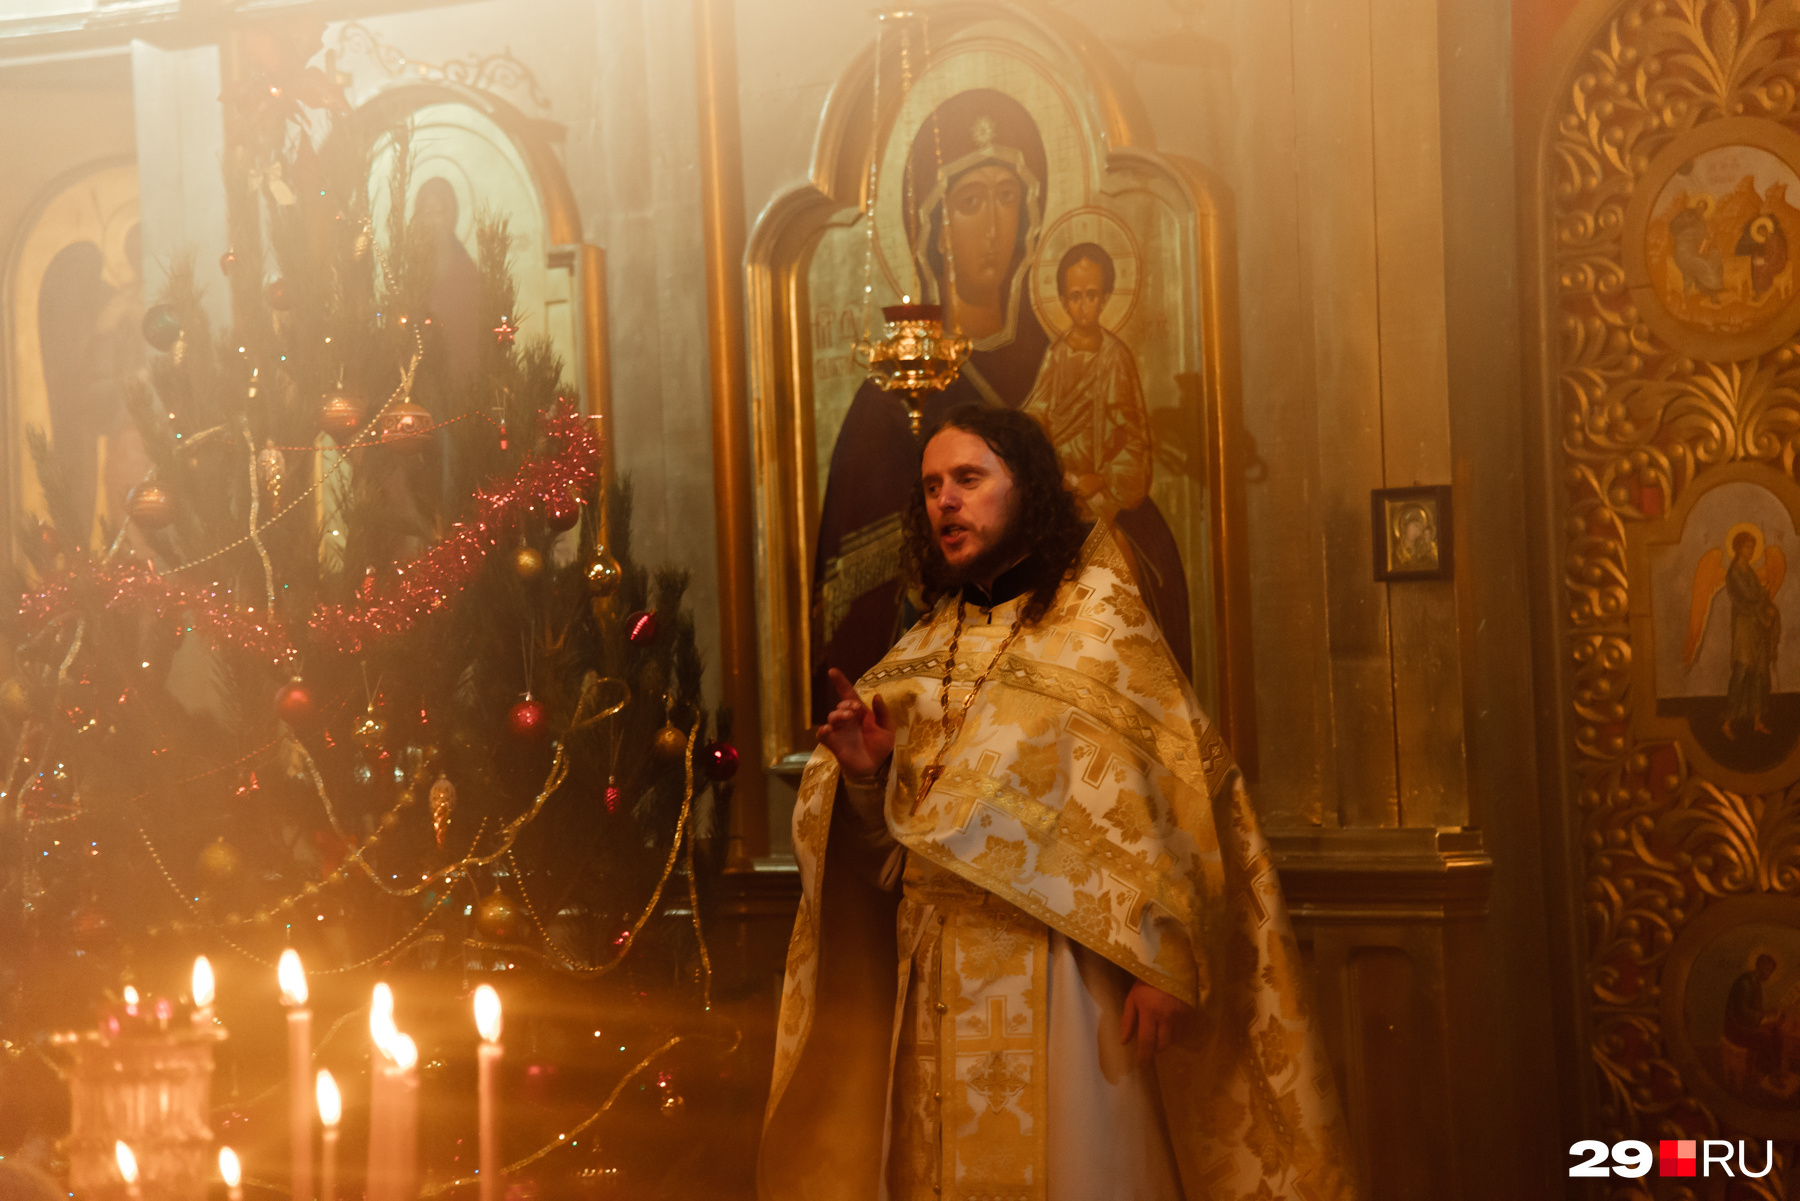 С конца 1990 годов в России рождественскими елками украшают православные храмы, например, ставят их при входе в храм и на солее — возвышении пола перед алтарной преградой или иконостасом в христианском храме